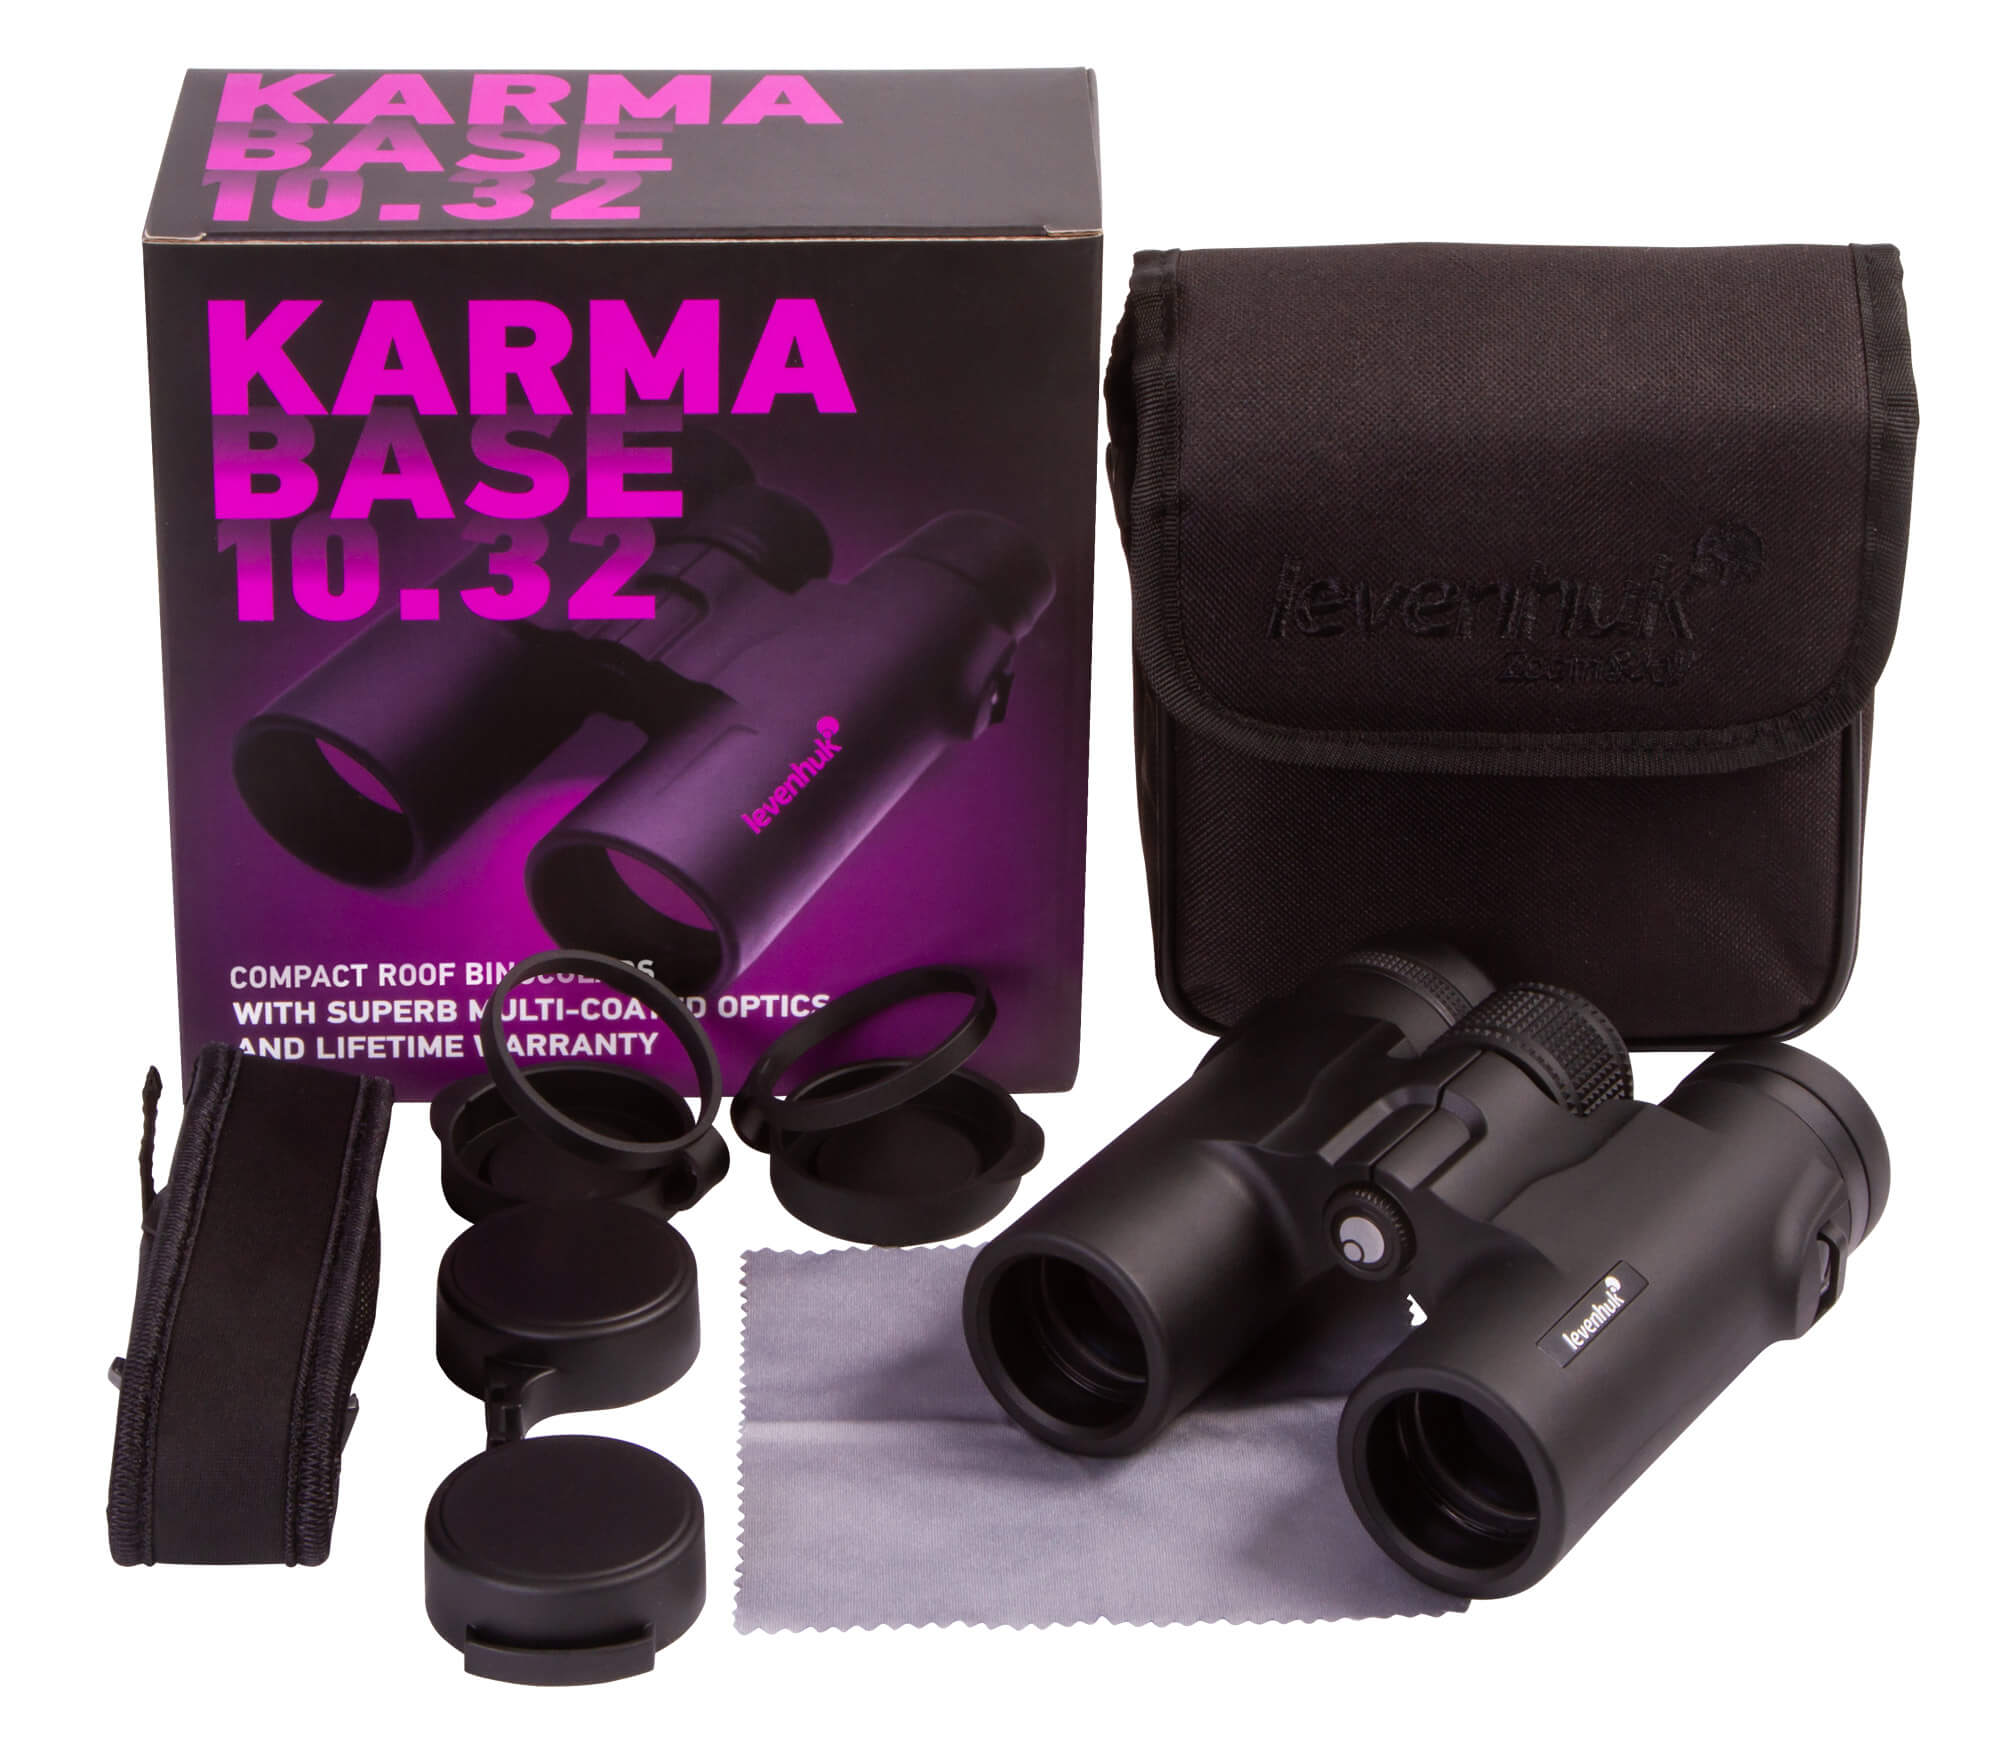 Obsah balenia - Binokulárny ďalekohľad Levenhuk Karma BASE 10x32